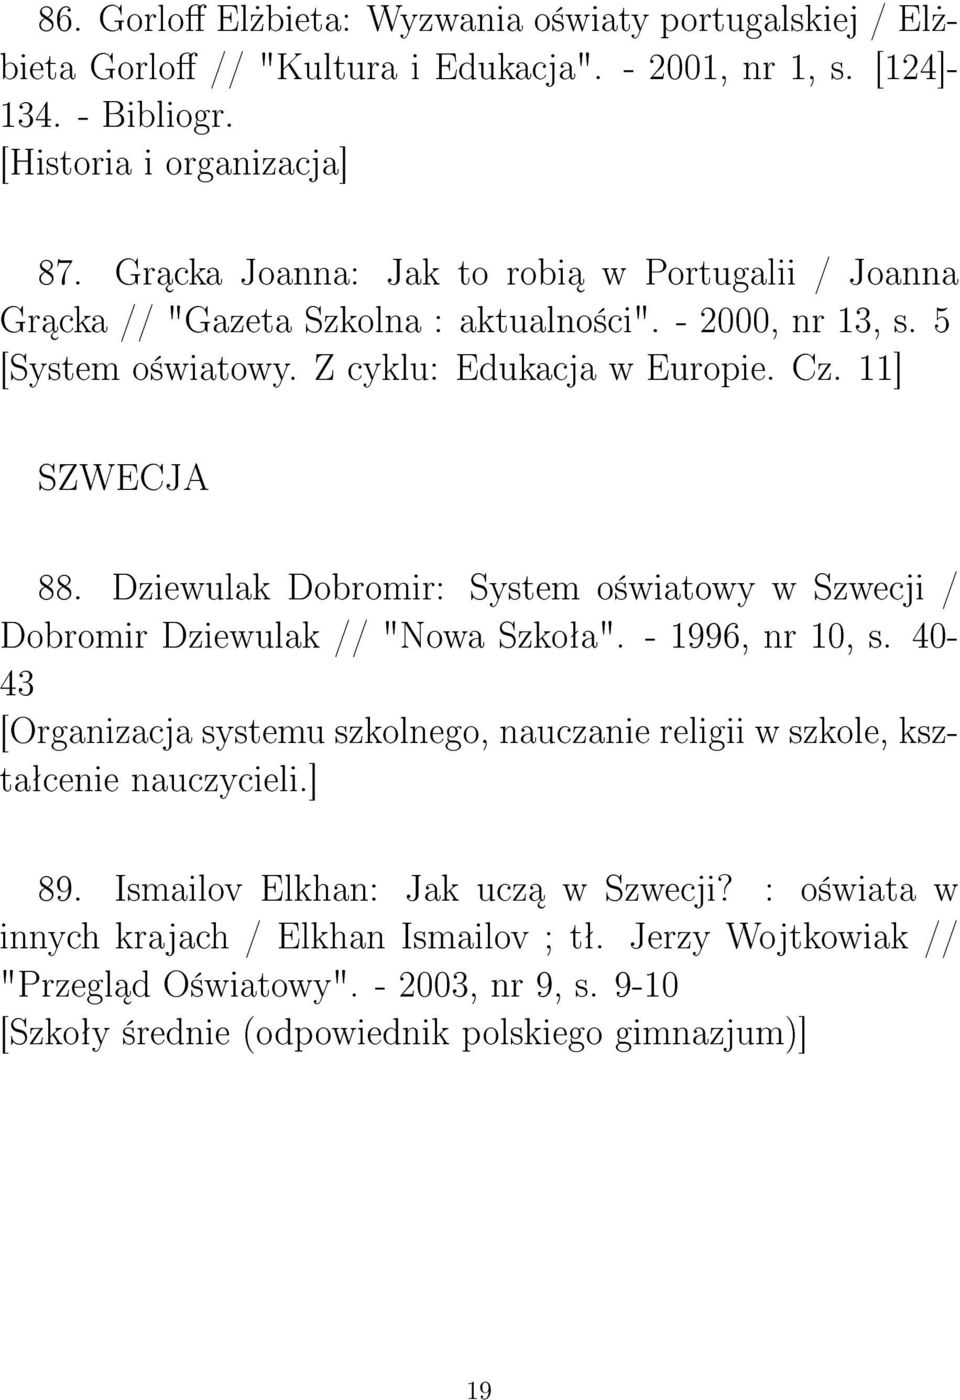 Dziewulak Dobromir: System o±wiatowy w Szwecji / Dobromir Dziewulak // "Nowa Szkoªa". - 1996, nr 10, s.